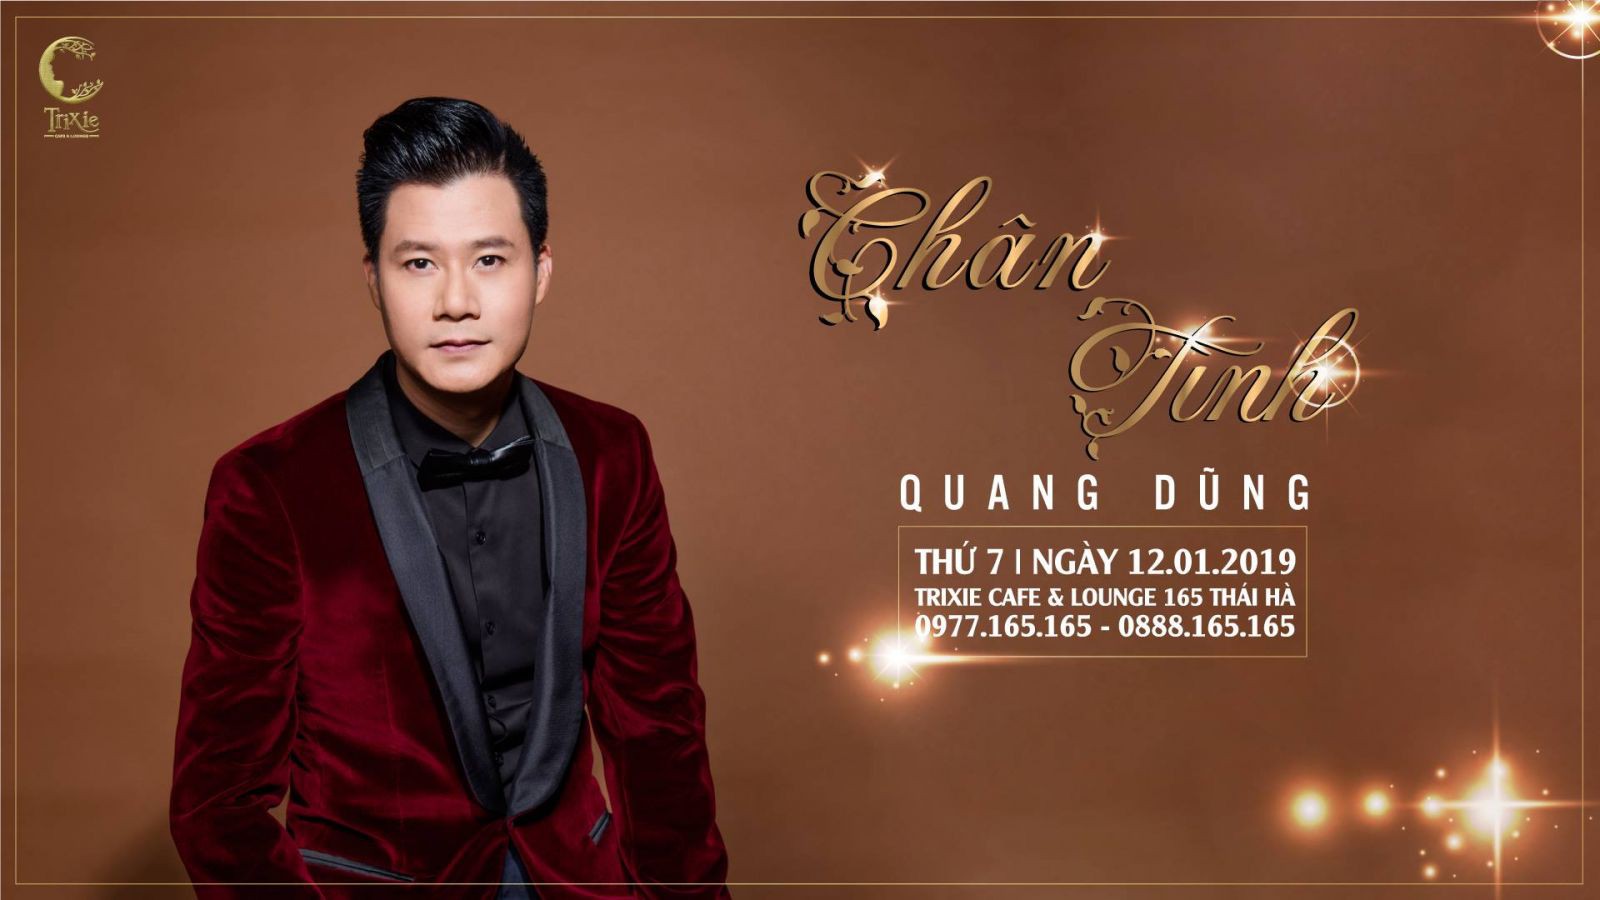 Minishow Quang Dũng tại Hà Nội ngày 12.01.2019